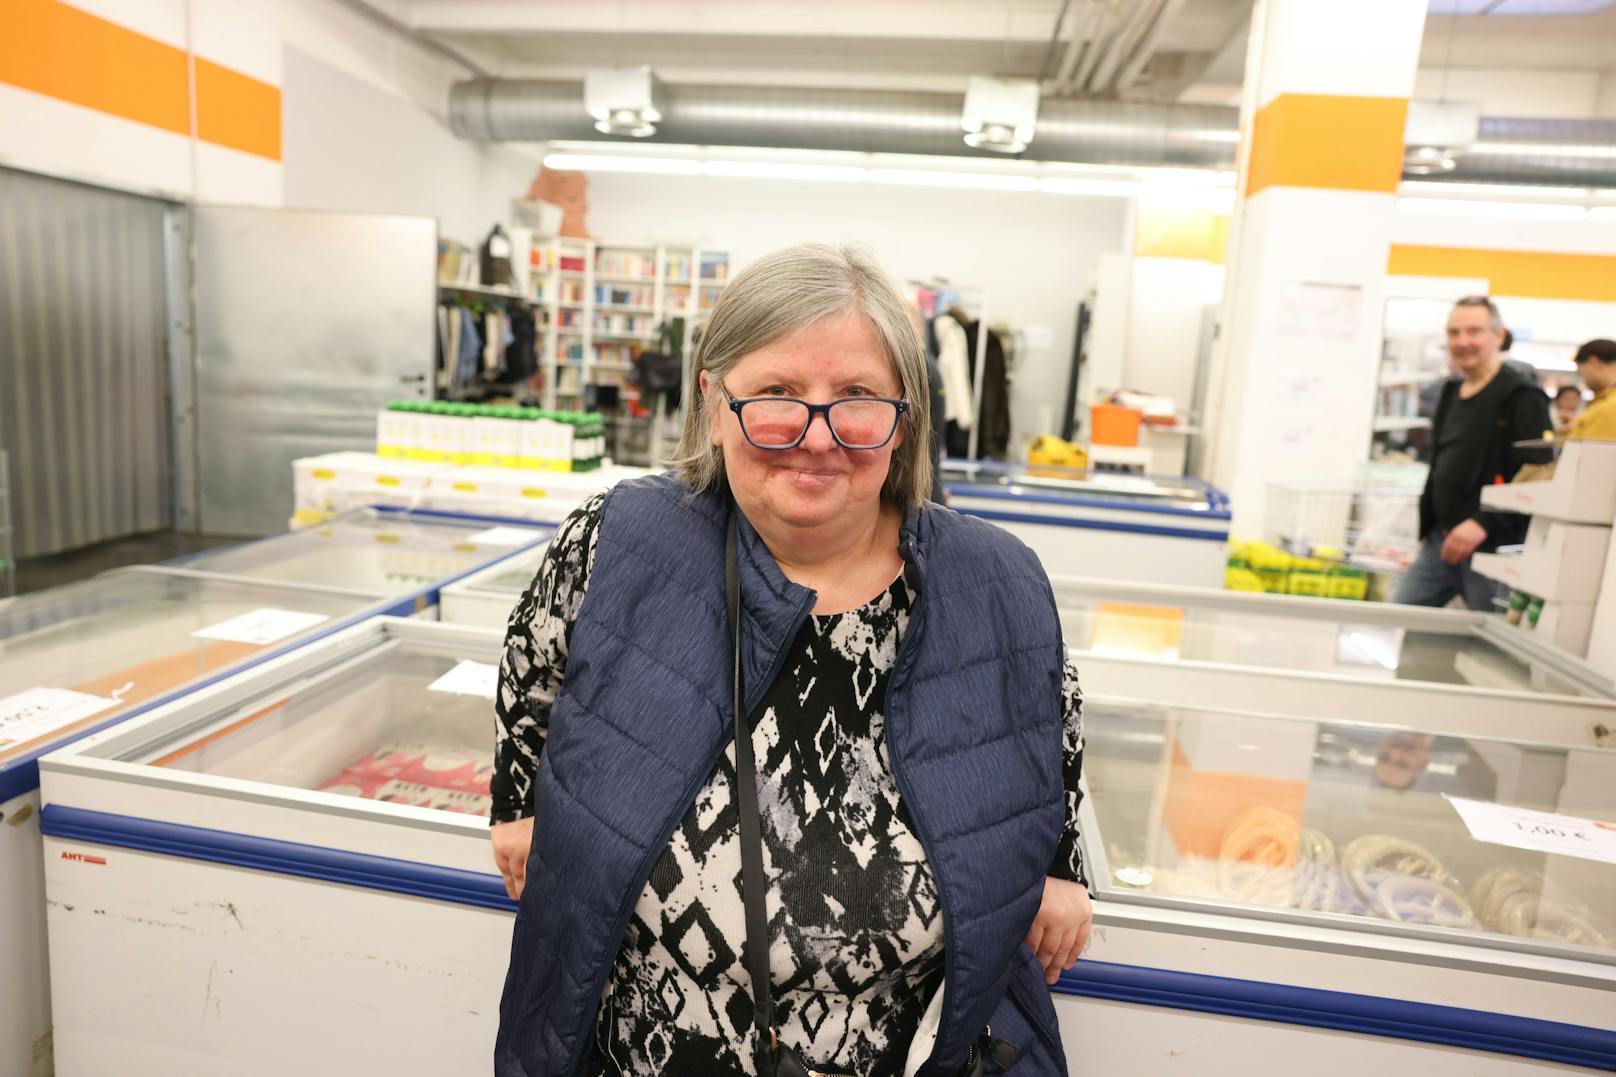 Magda kommt regelmäßig zum Sozialmarkt, um günstige Lebensmittel einzukaufen. Beim Kochen muss sie kreativ sein, sagt sie.